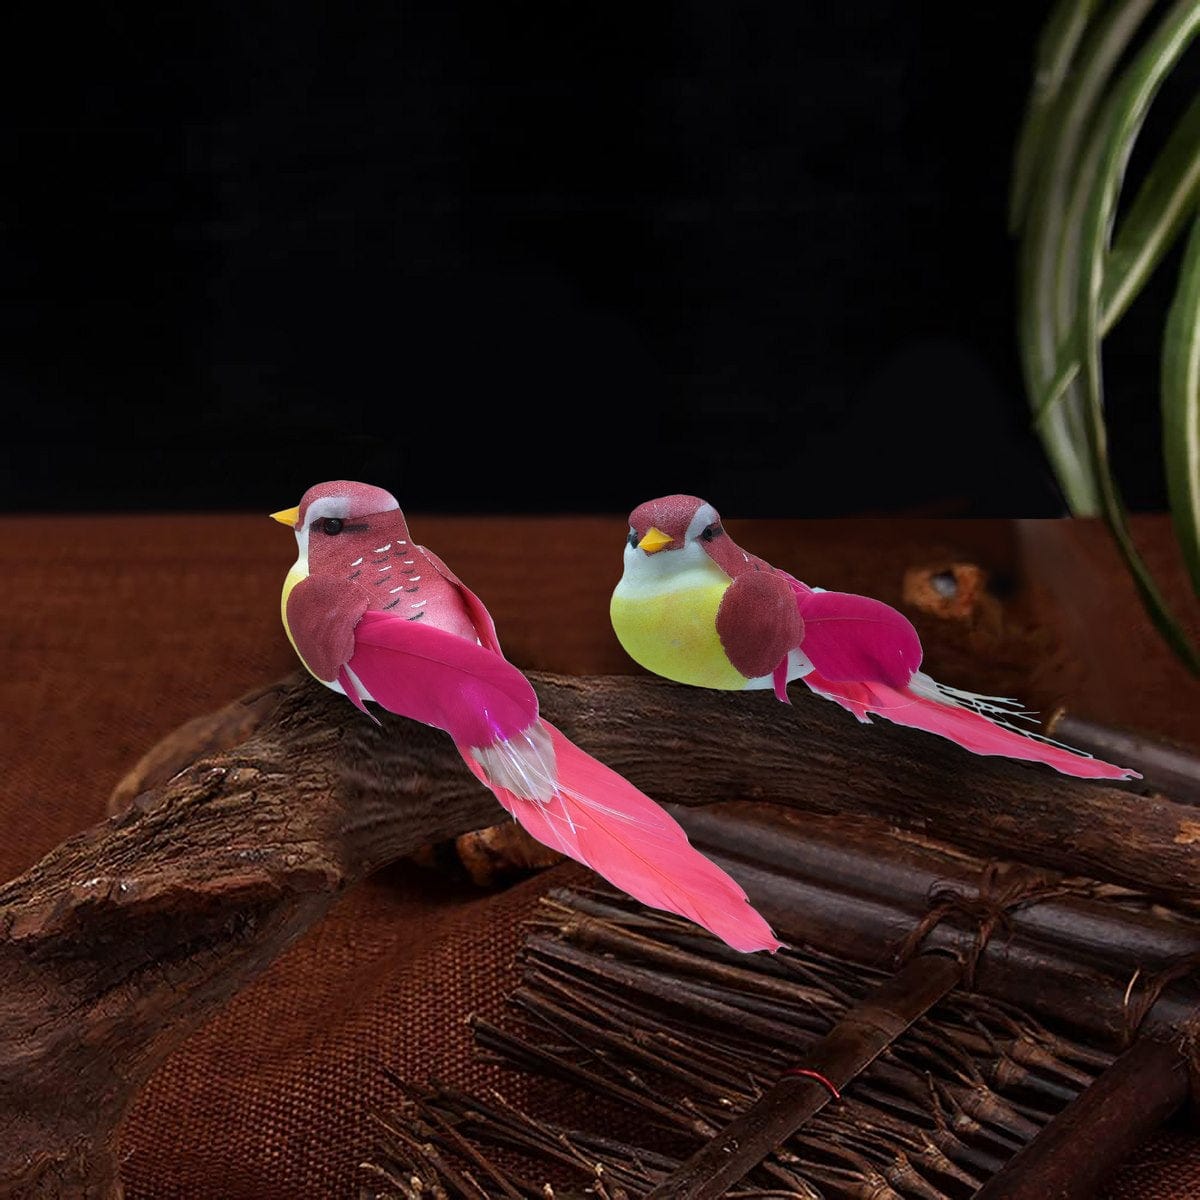 jags-mumbai Artificial Bird & Cage Artificial Bird for DIY and crafting I Contain 1 Unit Bird